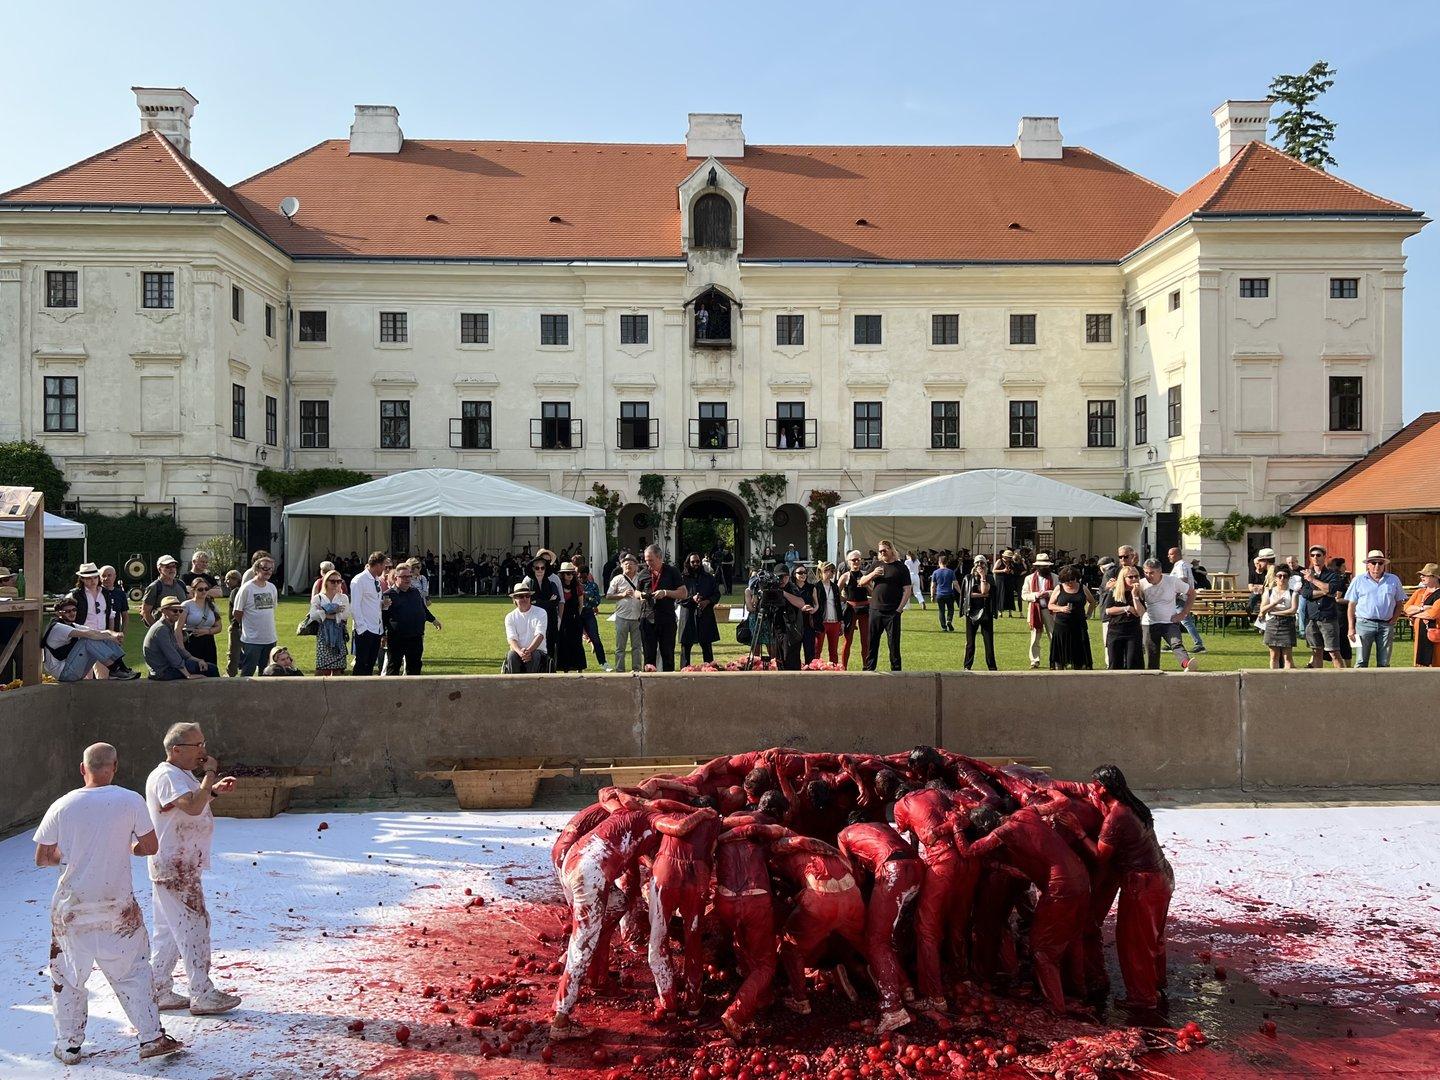 Pfingstfestspiele in Prinzendorf: Wein fließt, Blut spritzt